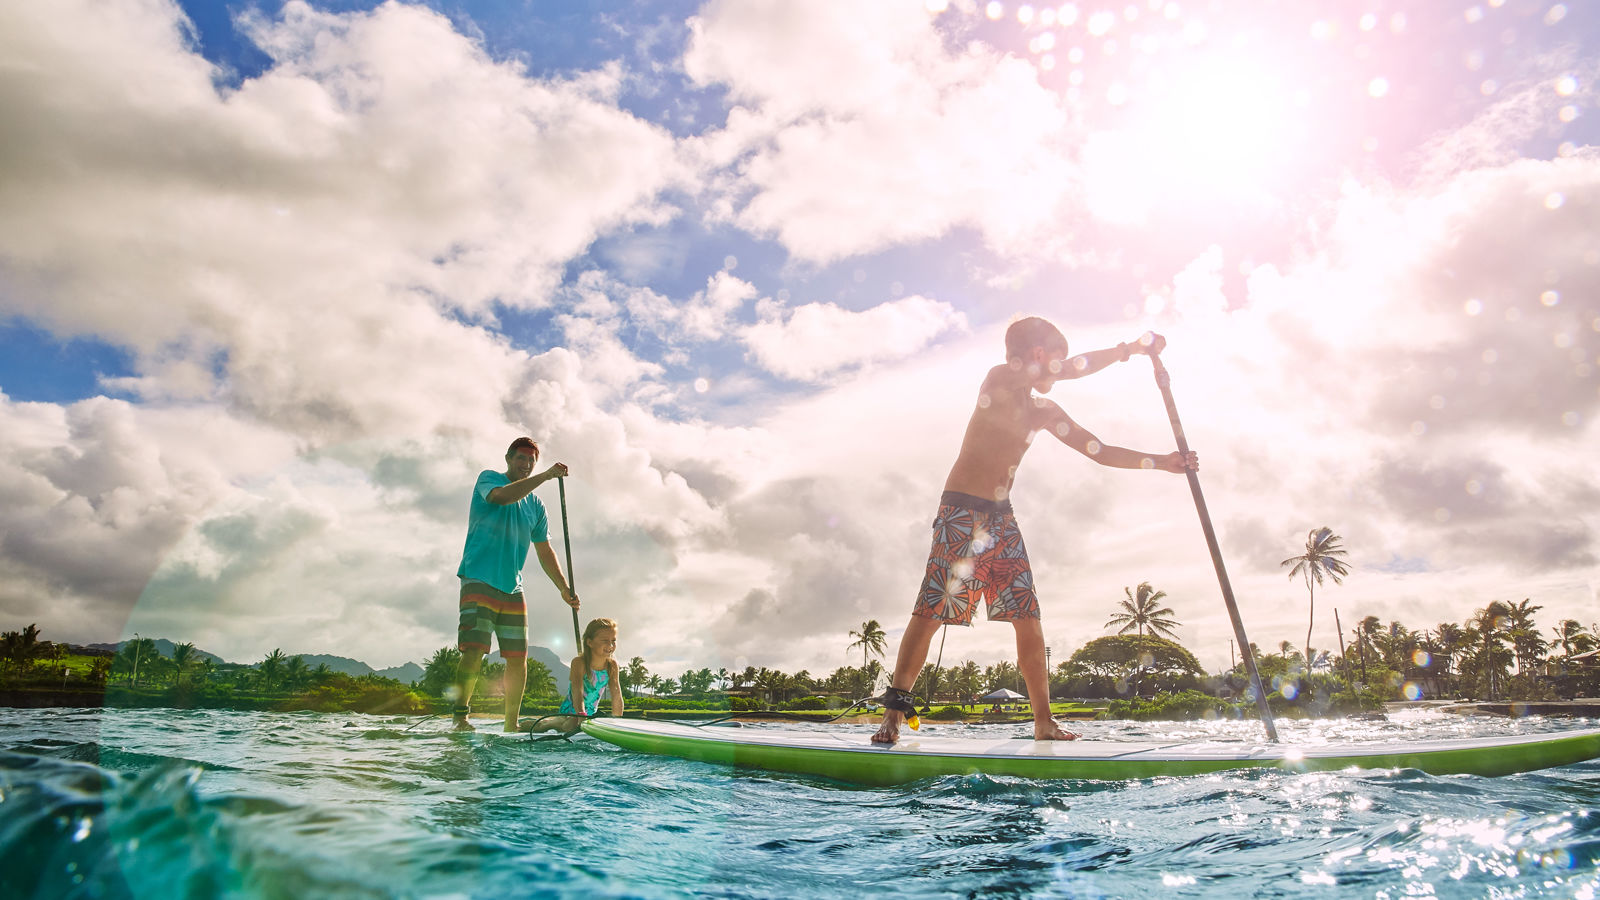 Kayaking in Kauai | Lodge at Kukui'ula - Water Sports ...